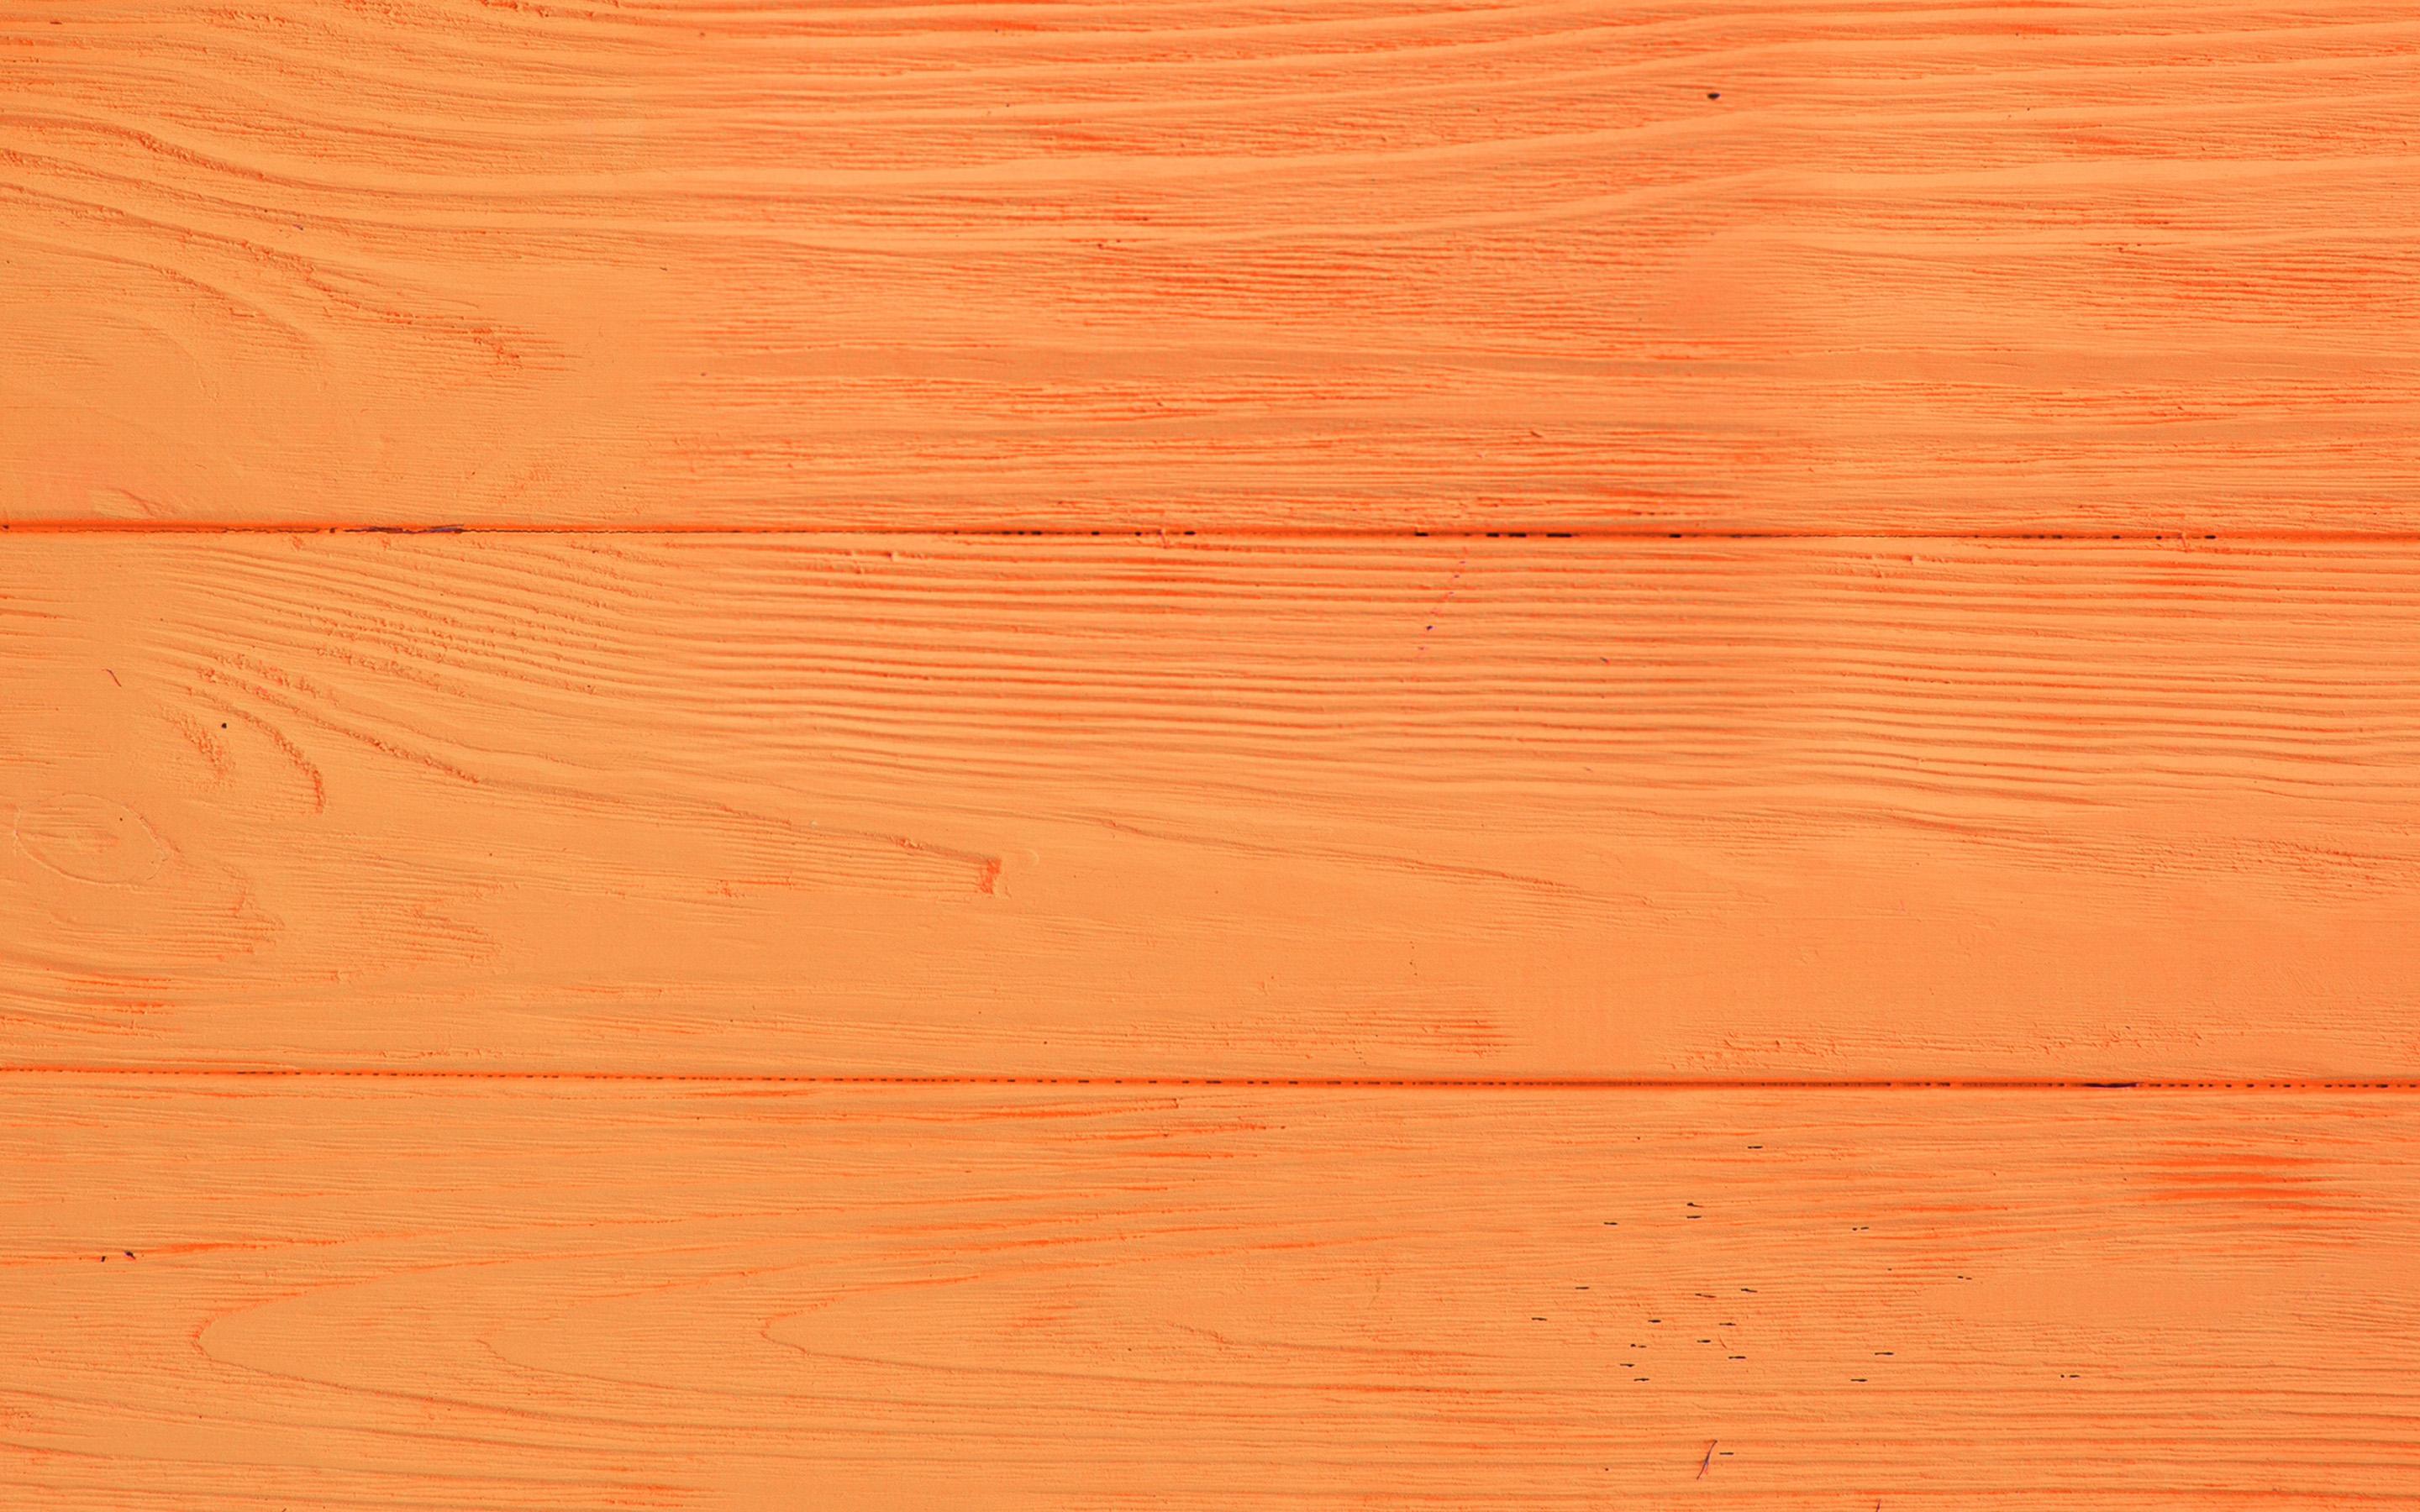 Hình nền gỗ cam: Hình nền gỗ cam là một lựa chọn tuyệt vời để trang trí thiết kế của bạn. Sắc cam ấm áp và gần gũi cùng với họa tiết gỗ là sự kết hợp hoàn hảo để mang đến vẻ đẹp tự nhiên cho các sản phẩm. Hãy xem hình ảnh để cảm nhận sự ấn tượng của gỗ cam.